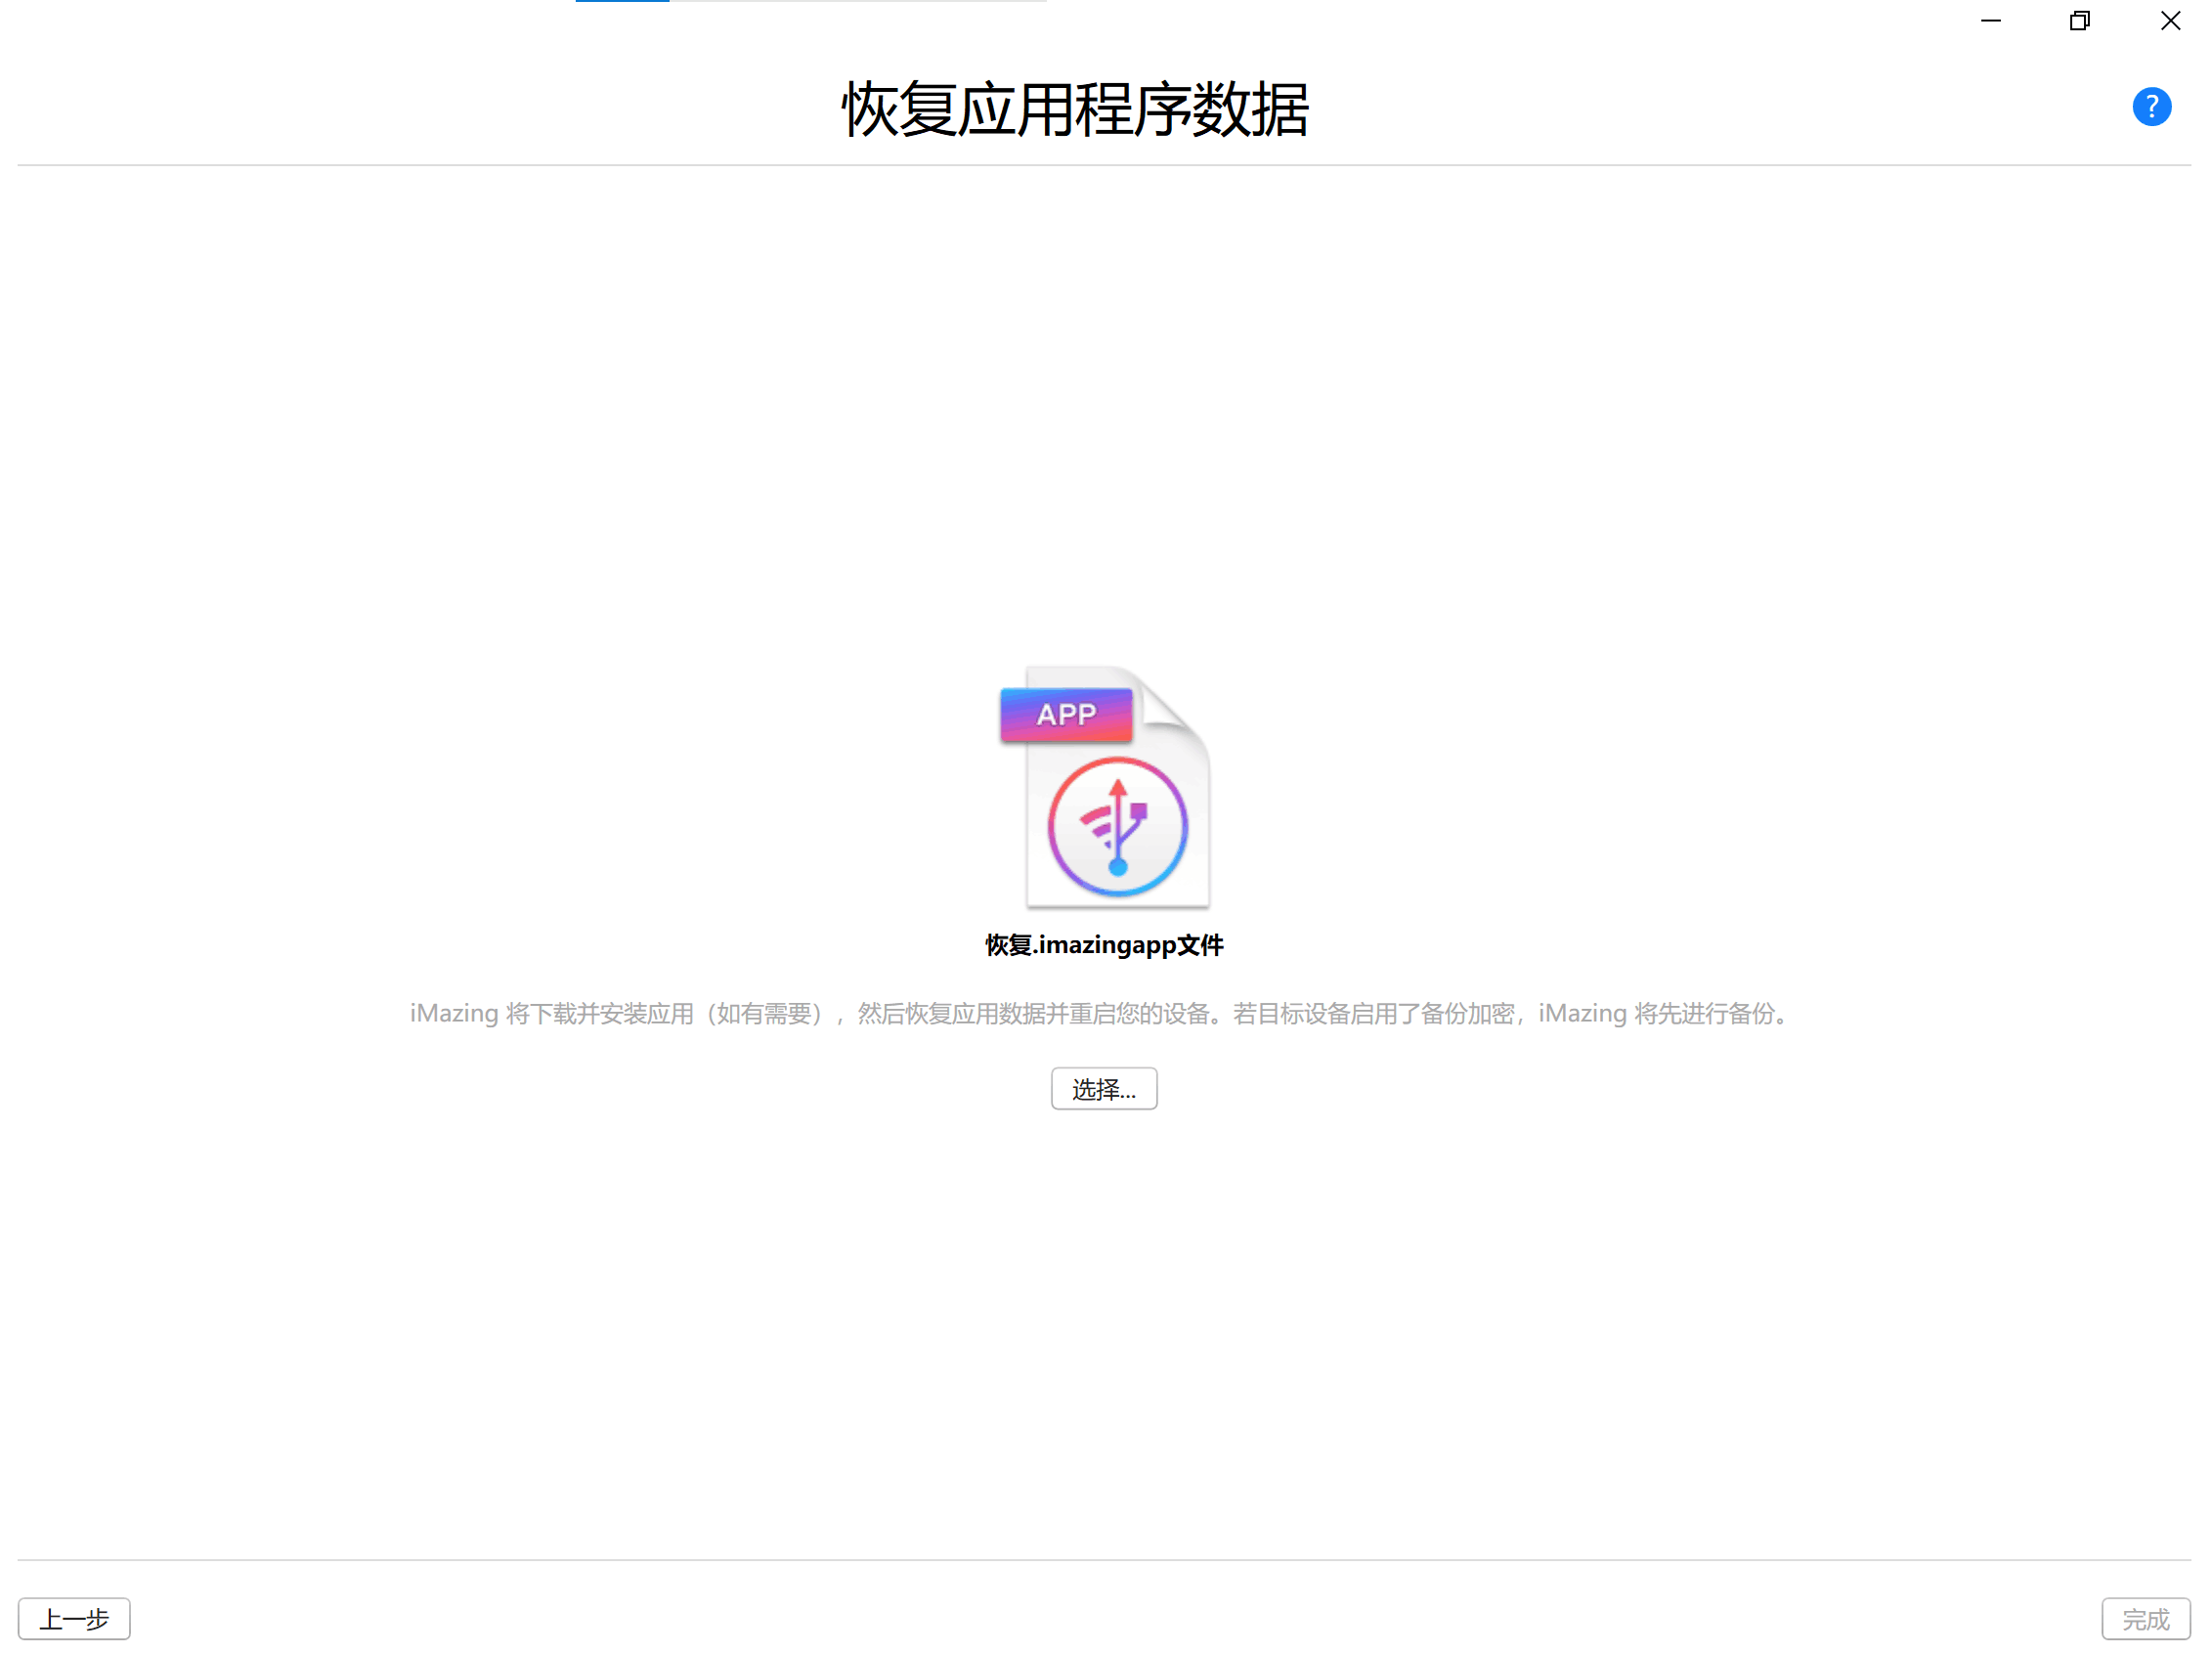 [萌新拯救计划] 安卓&iOS 双生视界fhx - 第8张